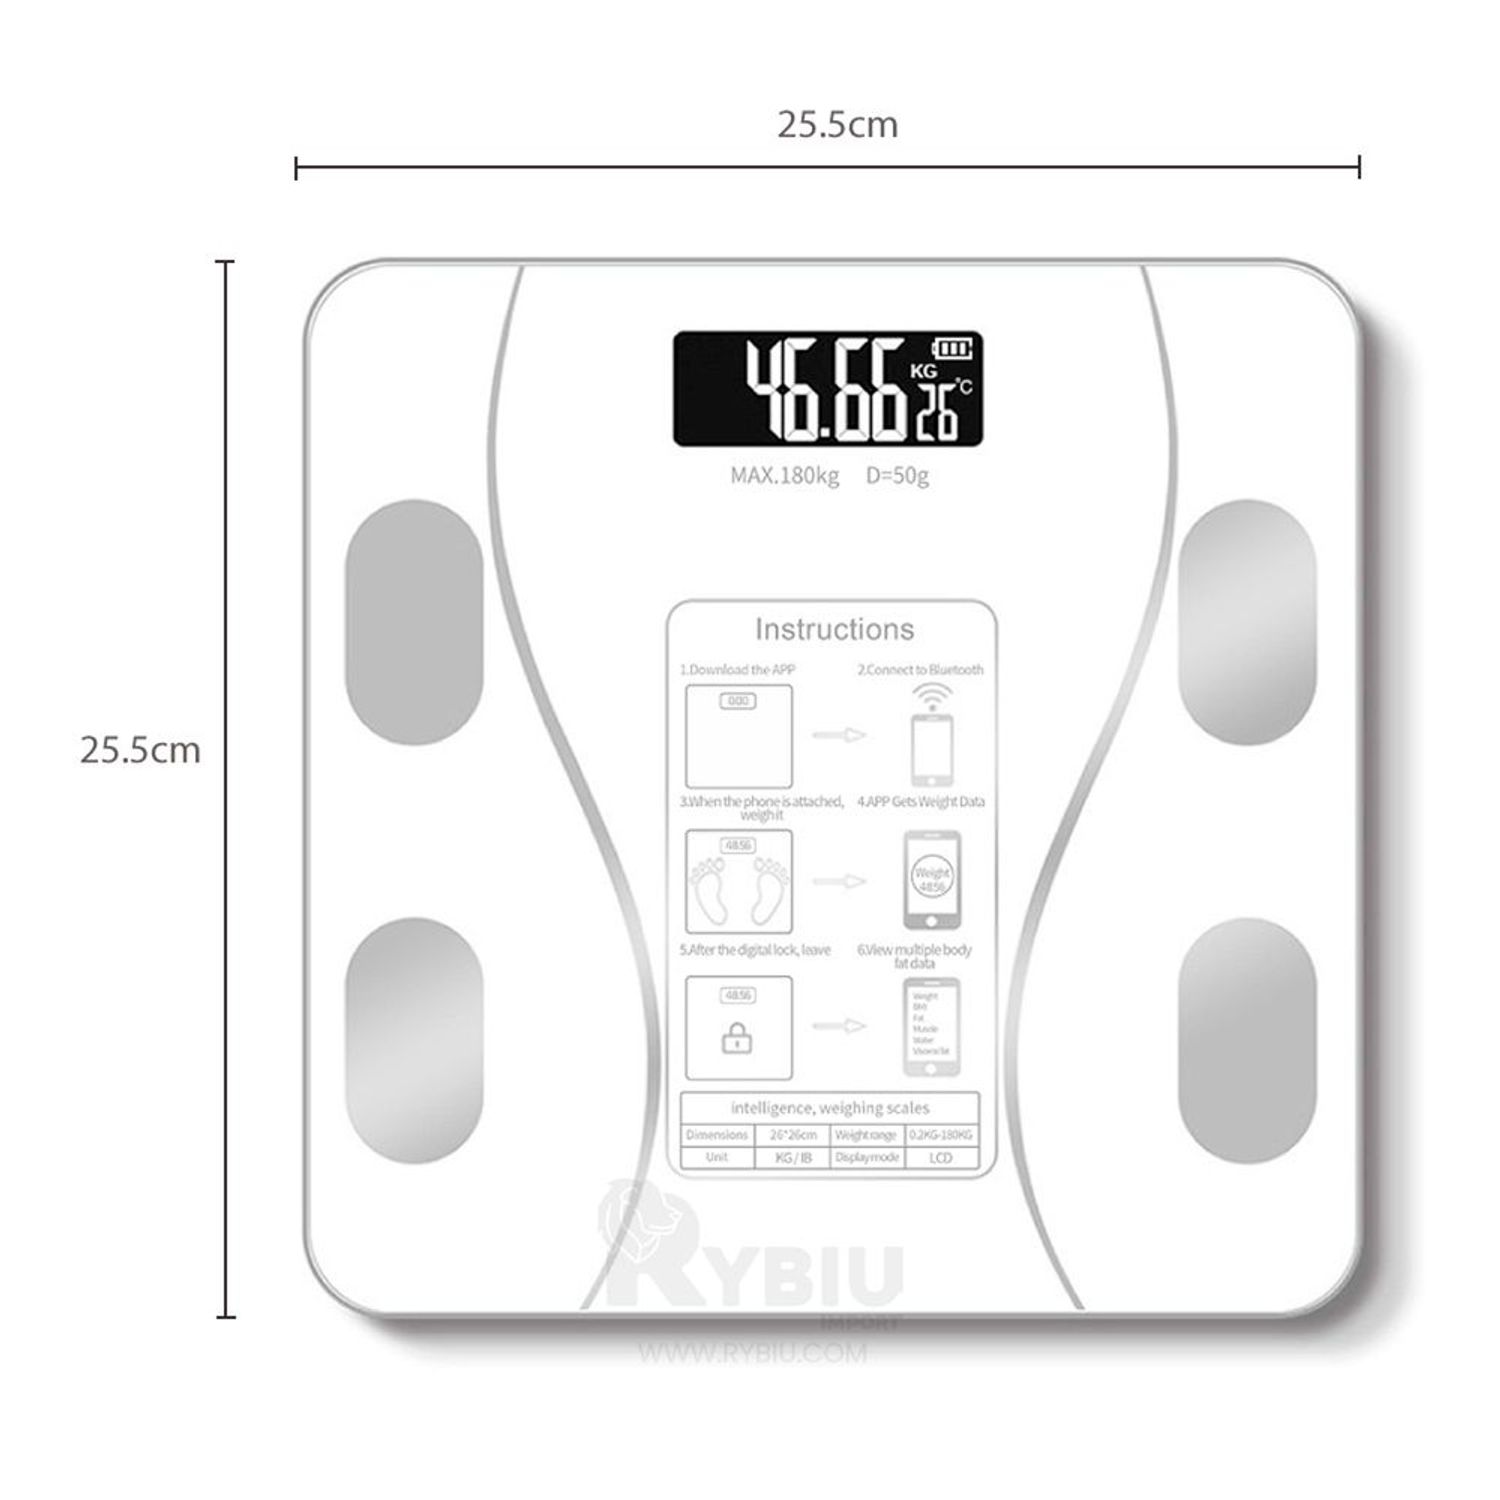 Bascula digital baño 180kg blanco - Productos - Tendencia Única